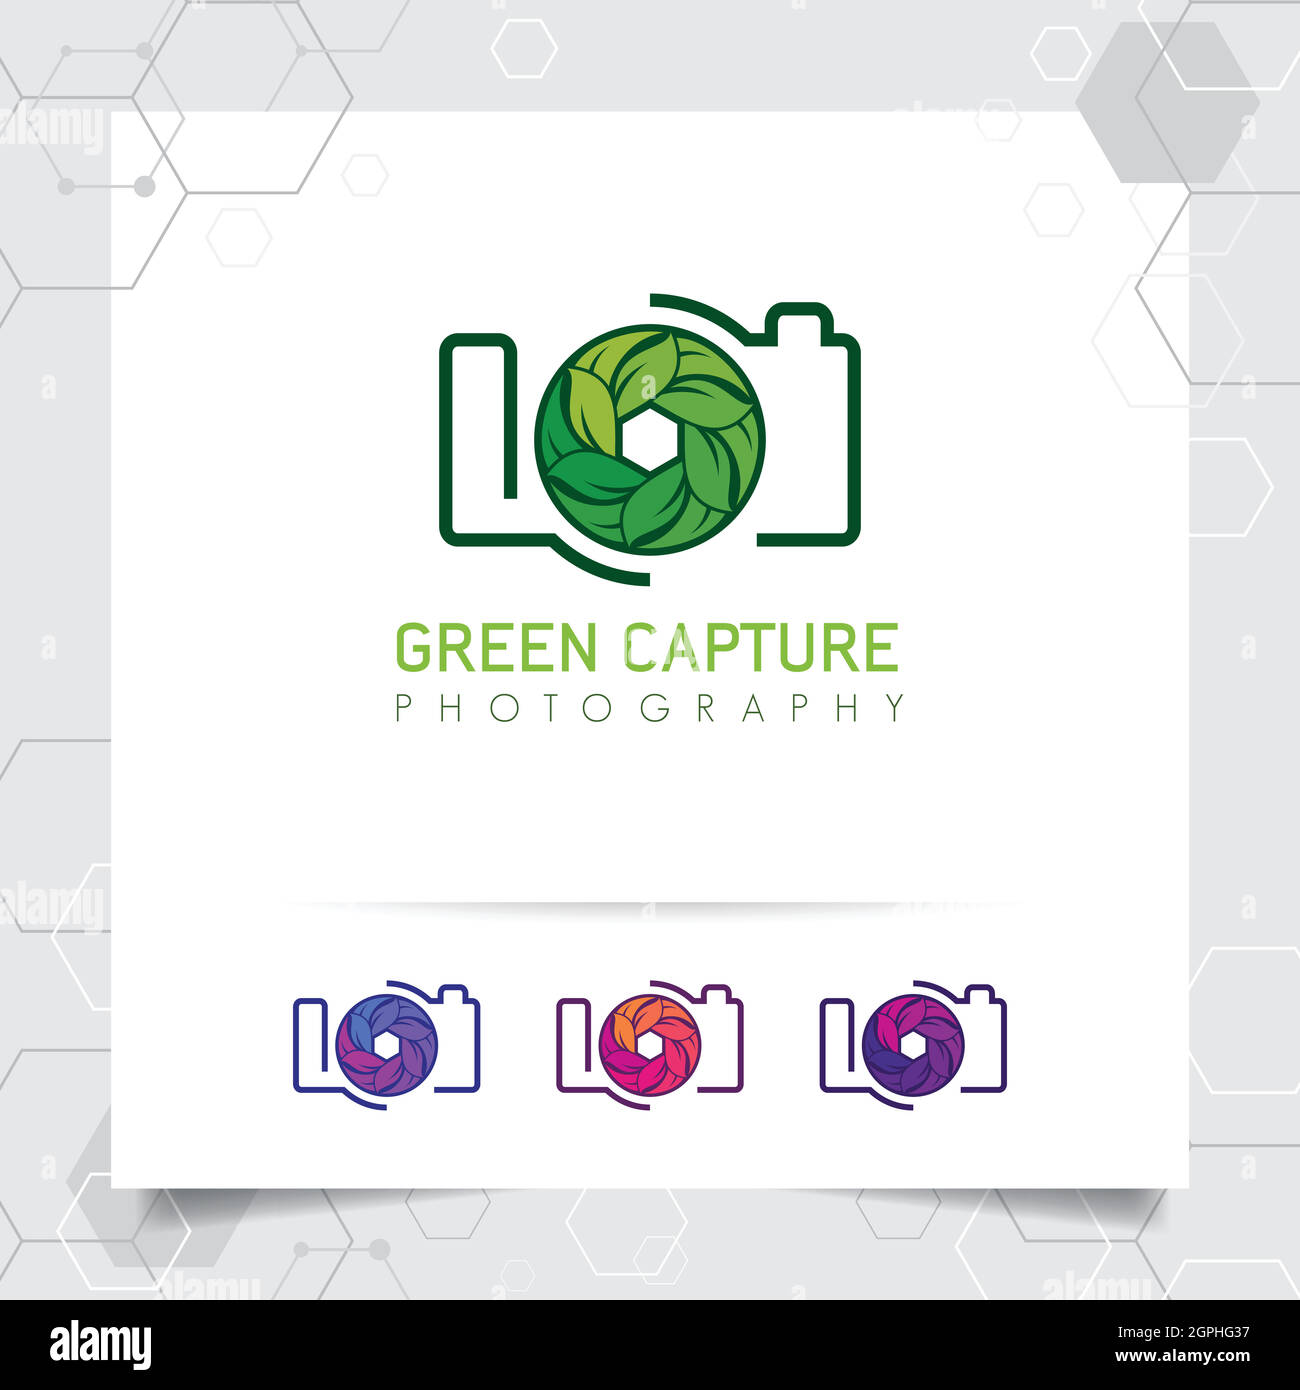 Fotografia e logo fotografico con il concetto di icona foglia e vettore obiettivo fotocamera per fotografo, foto studio, e fotografia della natura. Illustrazione Vettoriale